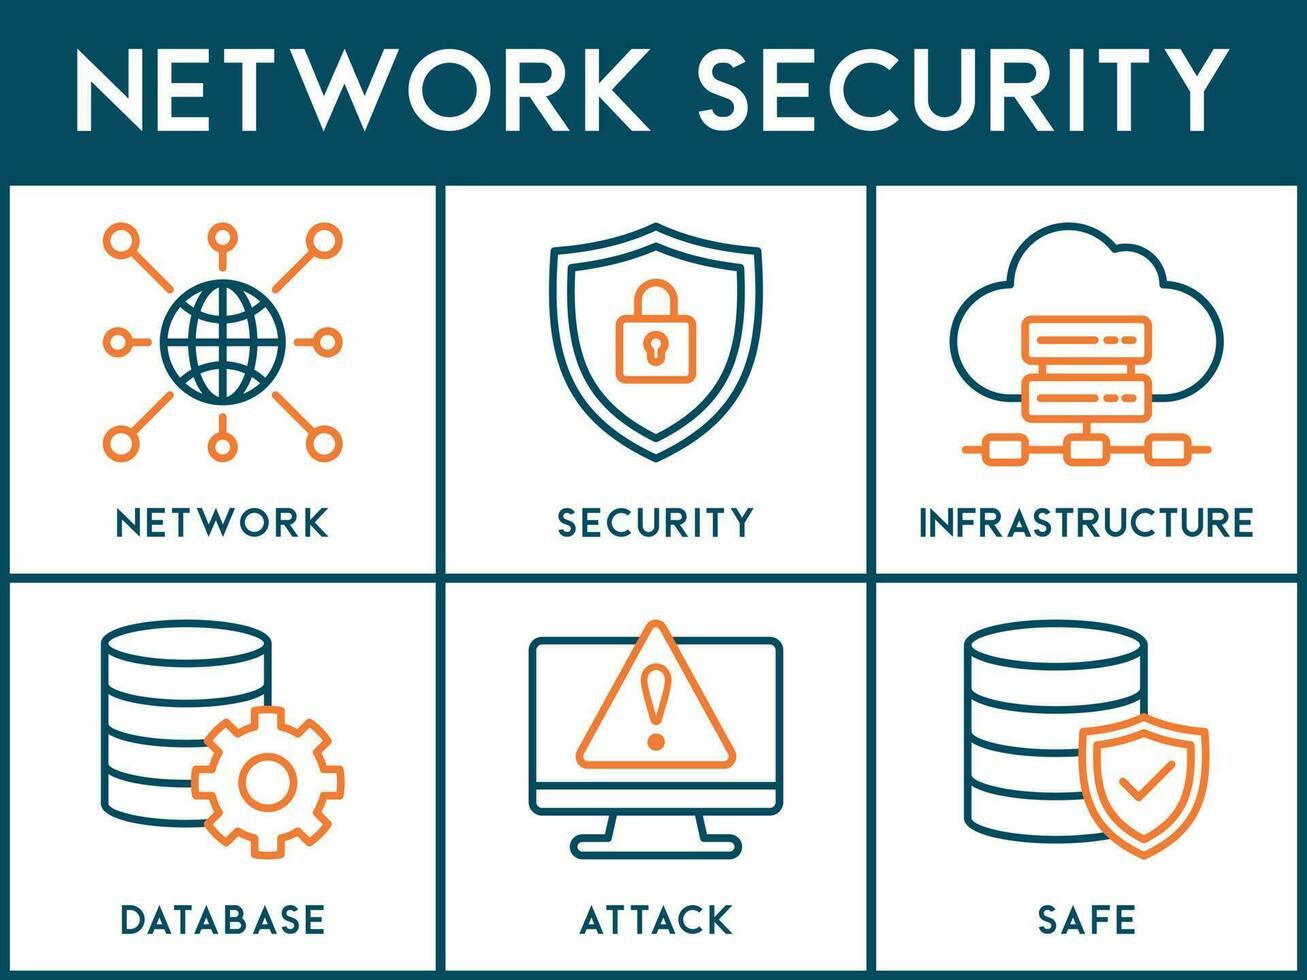 rede segurança bandeira rede ícone vetor ilustração conceito com ícone do rede ,segurança, a infraestrutura, base de dados, ataque e seguro